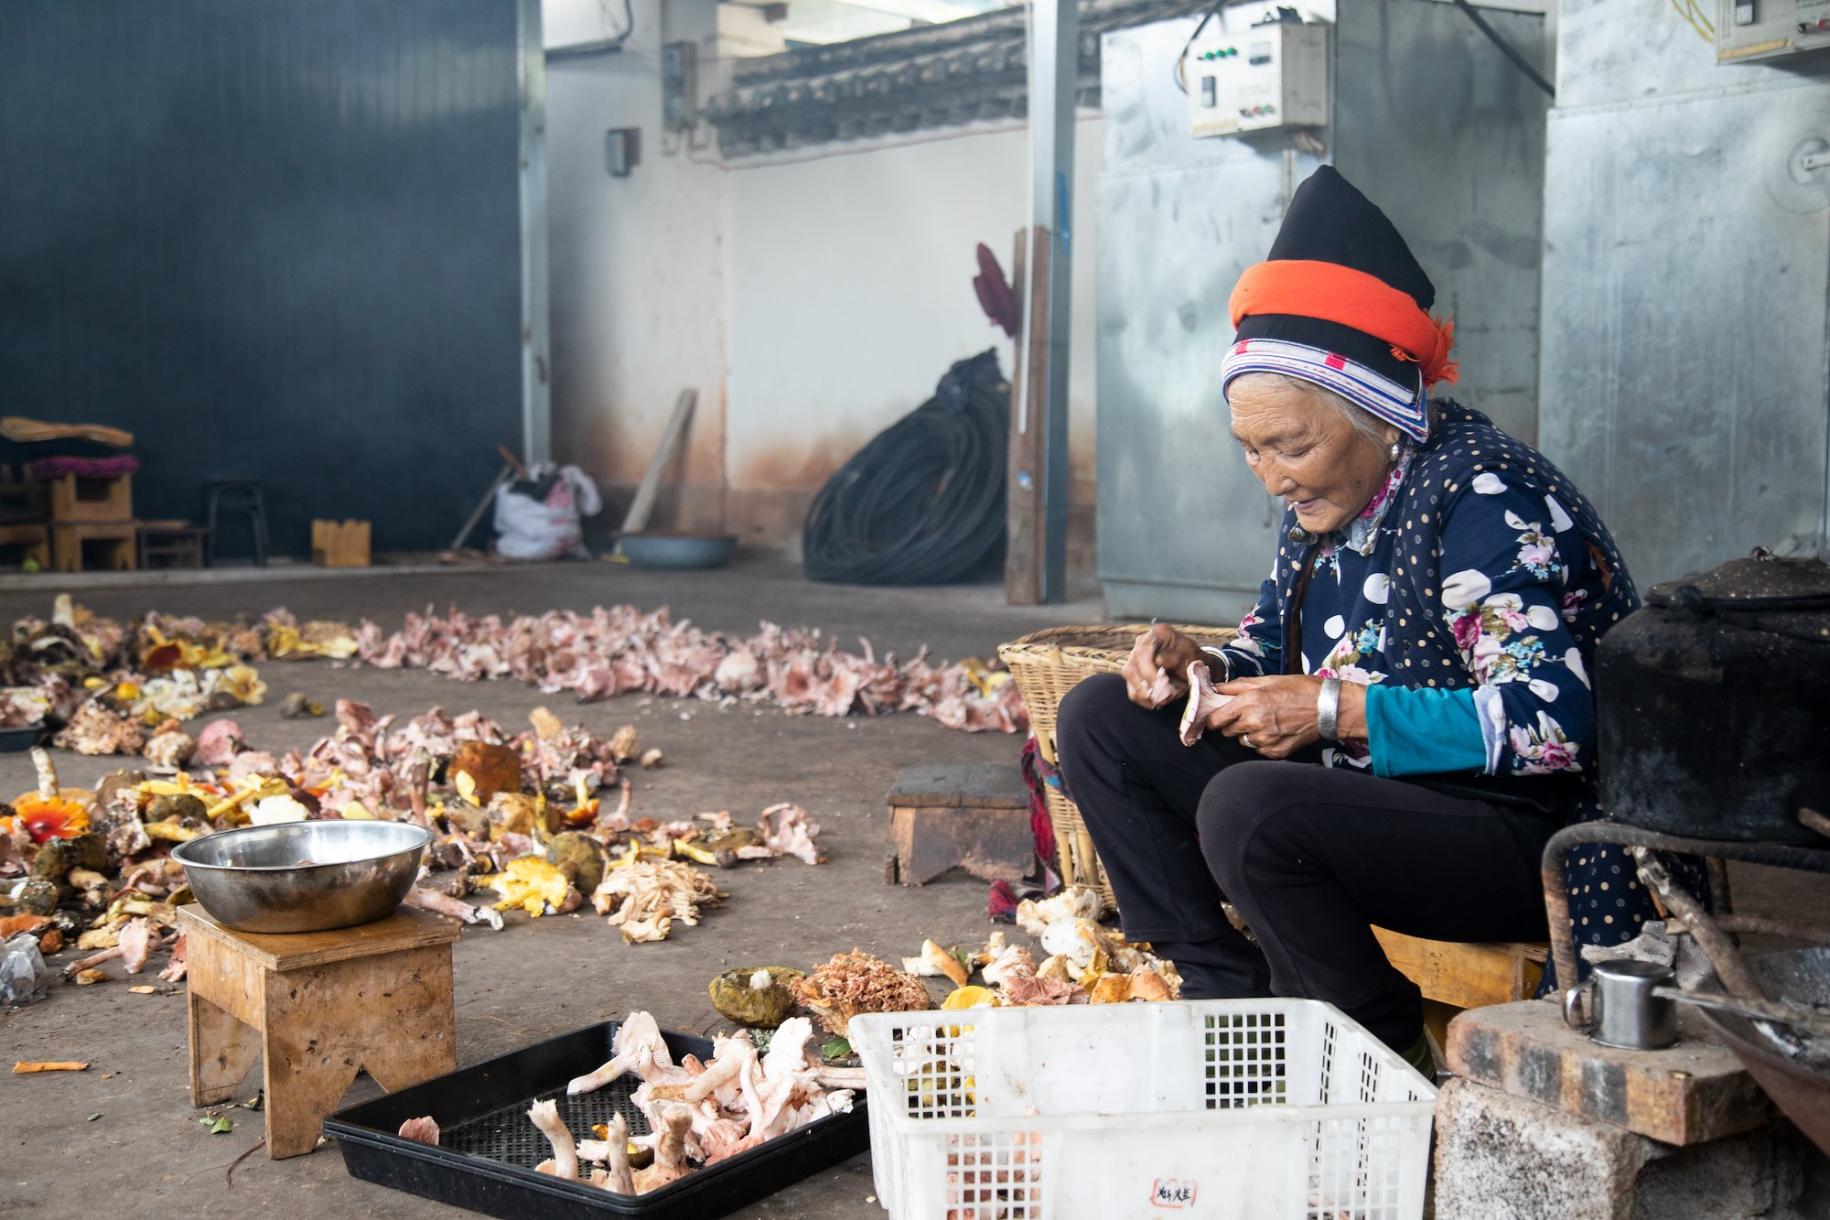 Une femme âgée issue d'une minorité ethnique en Chine est assise sur un petit banc en bois et trie patiemment des champignons.